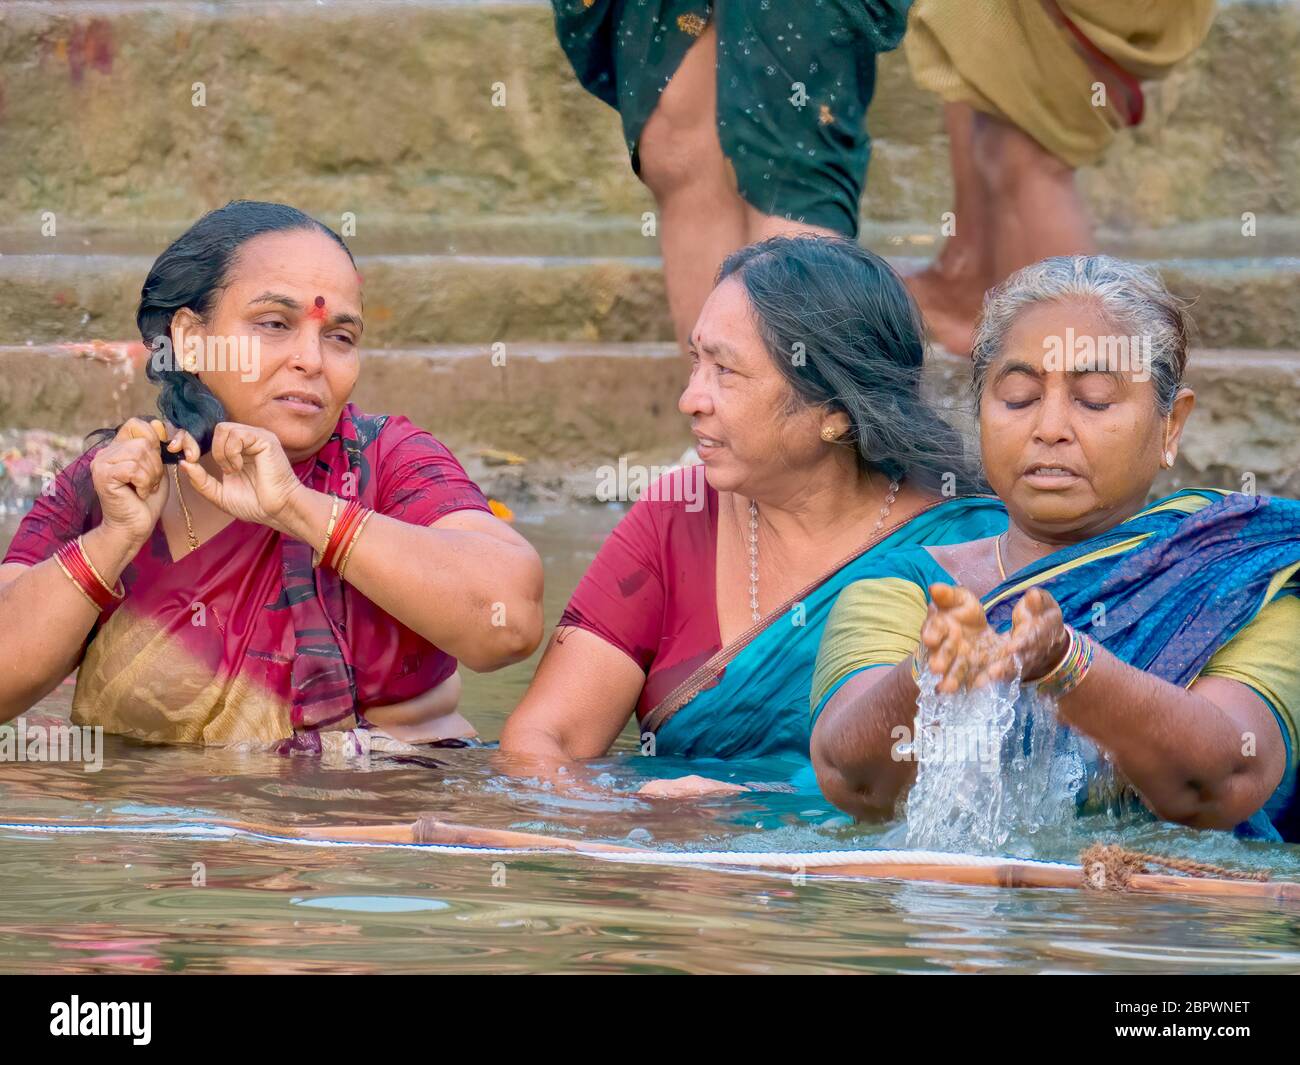 Varanasi, Inde - 14 novembre 2015. Trois femmes indiennes se baignent dans le Gange, lors d'un pèlerinage religieux hindou lors du festival annuel de Diwali. Banque D'Images